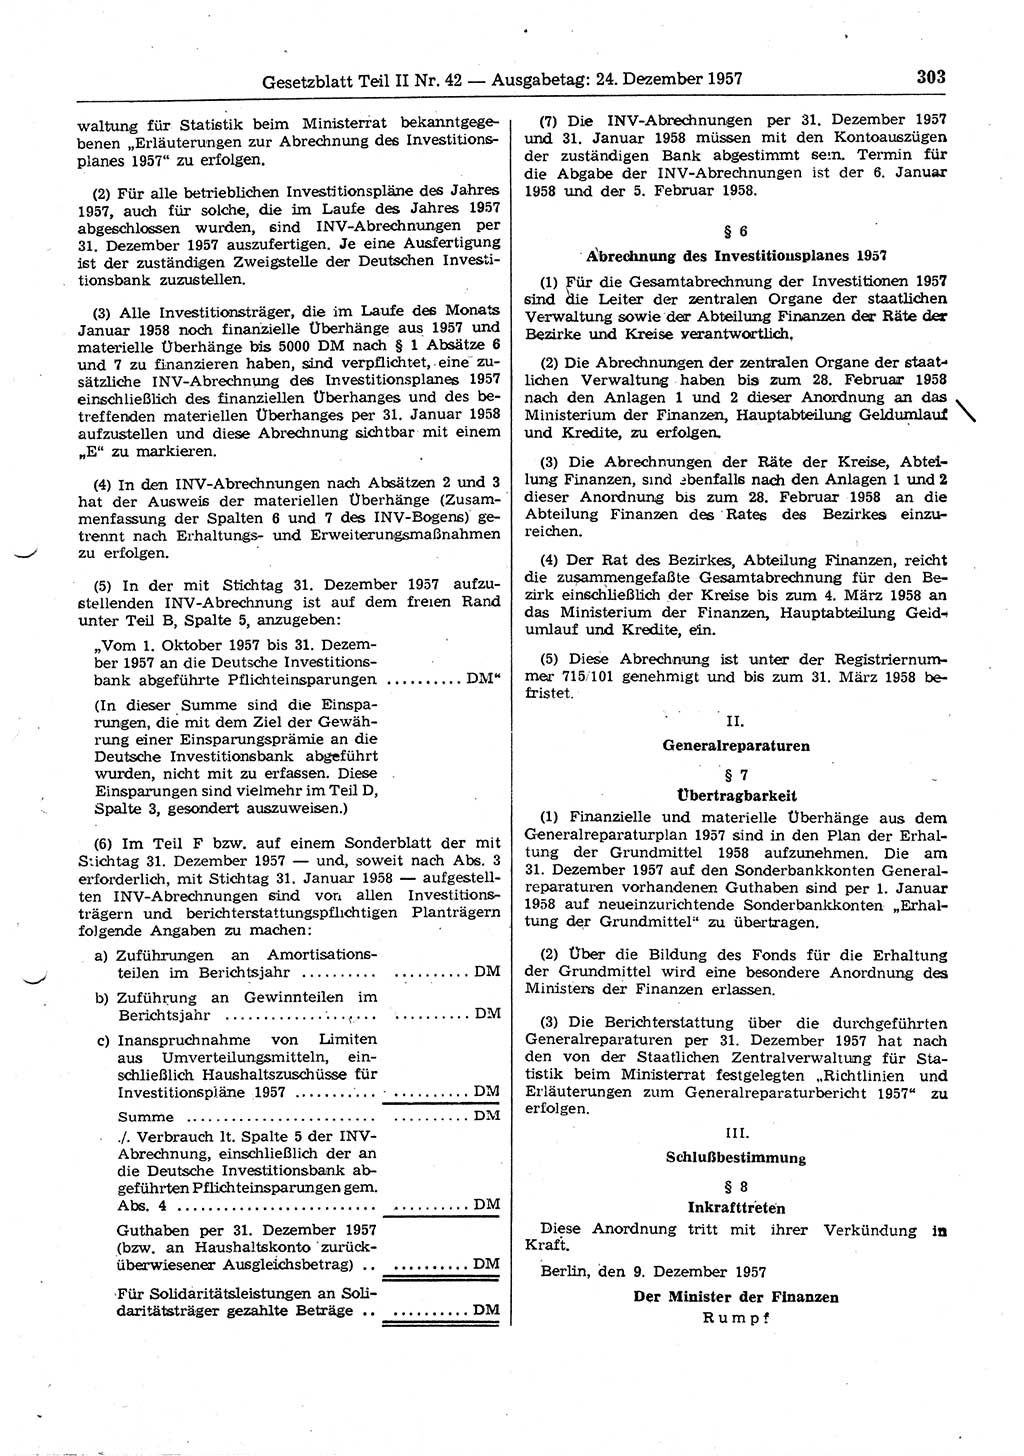 Gesetzblatt (GBl.) der Deutschen Demokratischen Republik (DDR) Teil ⅠⅠ 1957, Seite 303 (GBl. DDR ⅠⅠ 1957, S. 303)